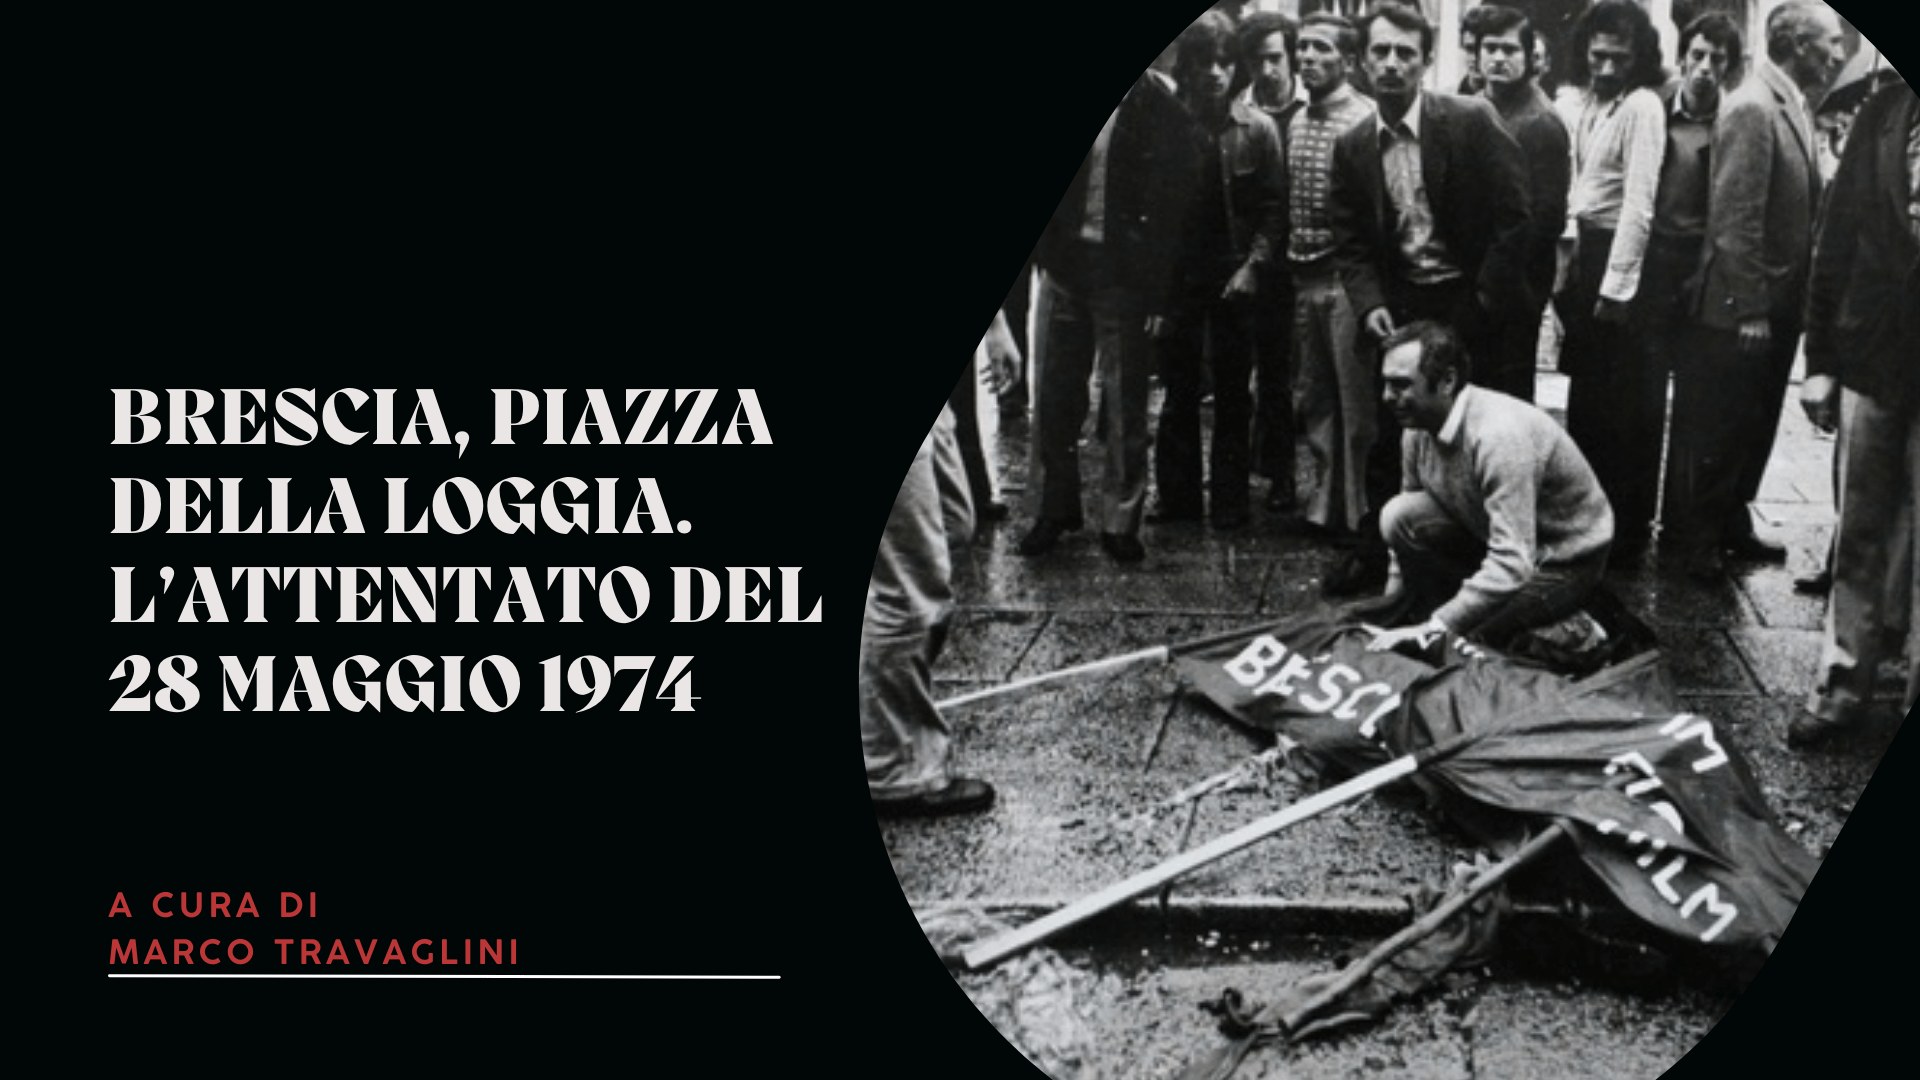 Brescia, piazza della Loggia. L’attentato del 28 maggio 1974